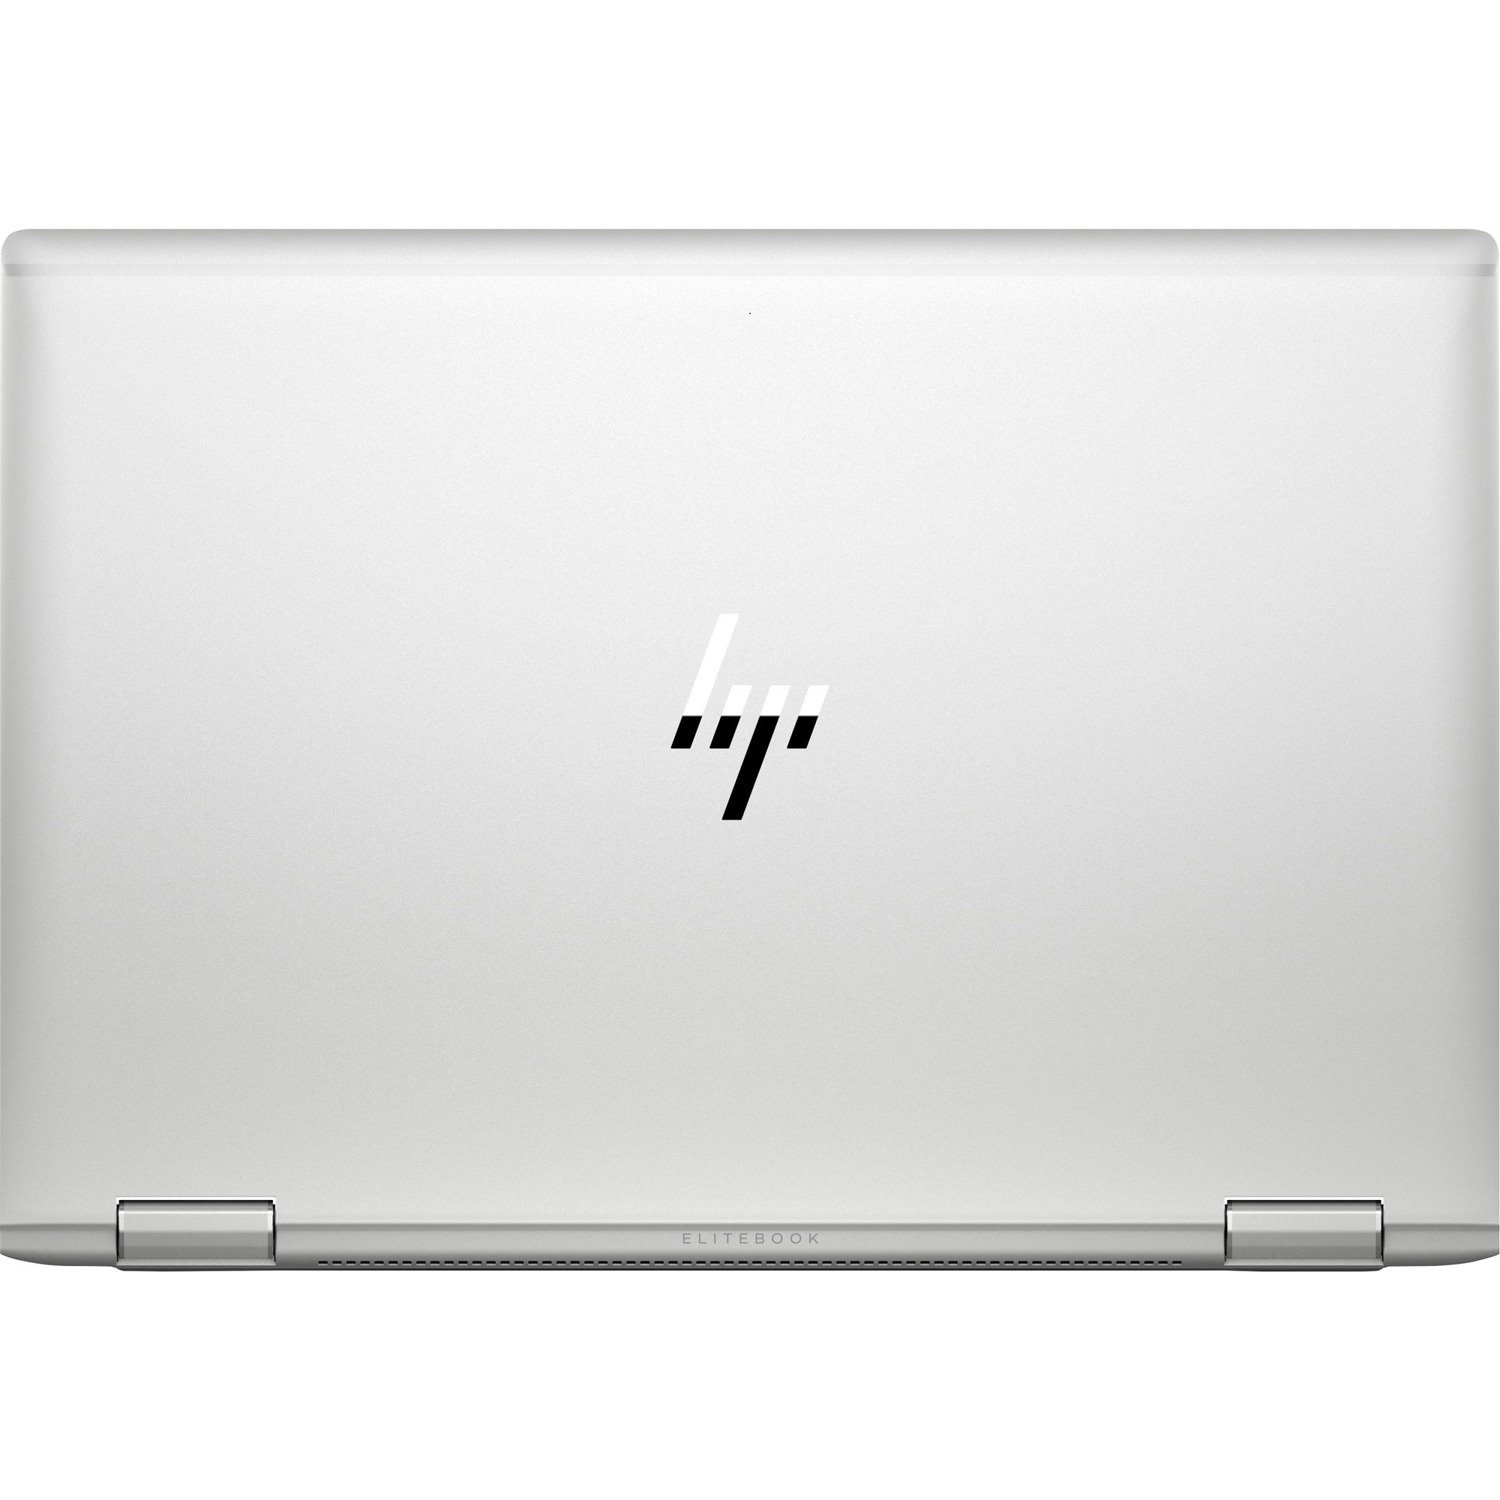 HP EliteBook x360 1040 G7 14" Touchscreen Convertible 2 in 1 Notebook - Intel Core i5 10th Gen i5-10310U Quad-core (4 Core) 1.70 GHz - 8 GB Total RAM - 256 GB SSD